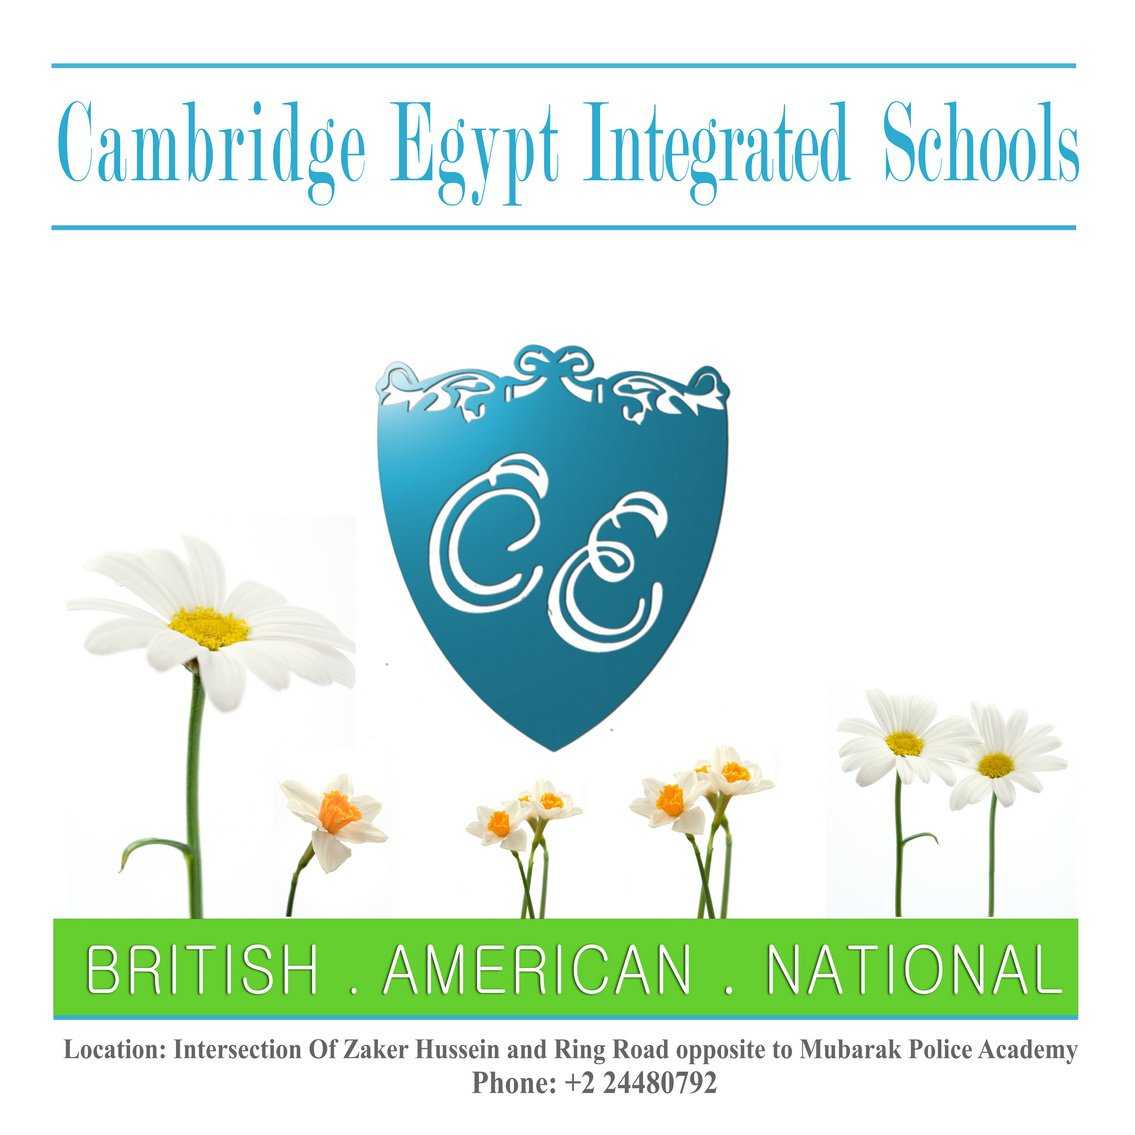 مدارس كيمبردج مصر المتكاملة